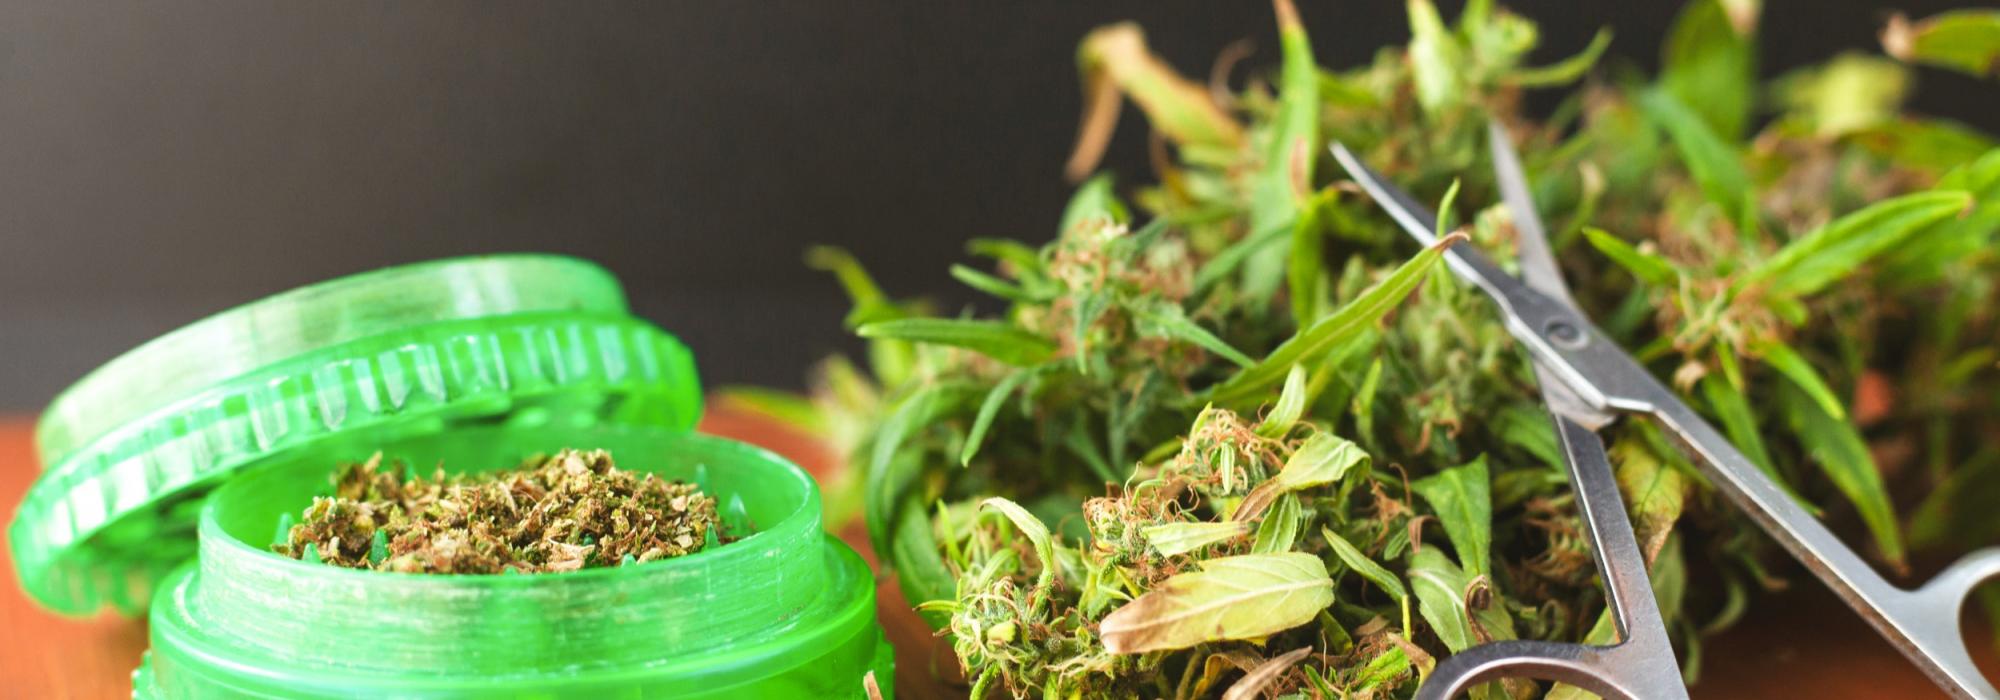 Cannabis fioritura e taglio